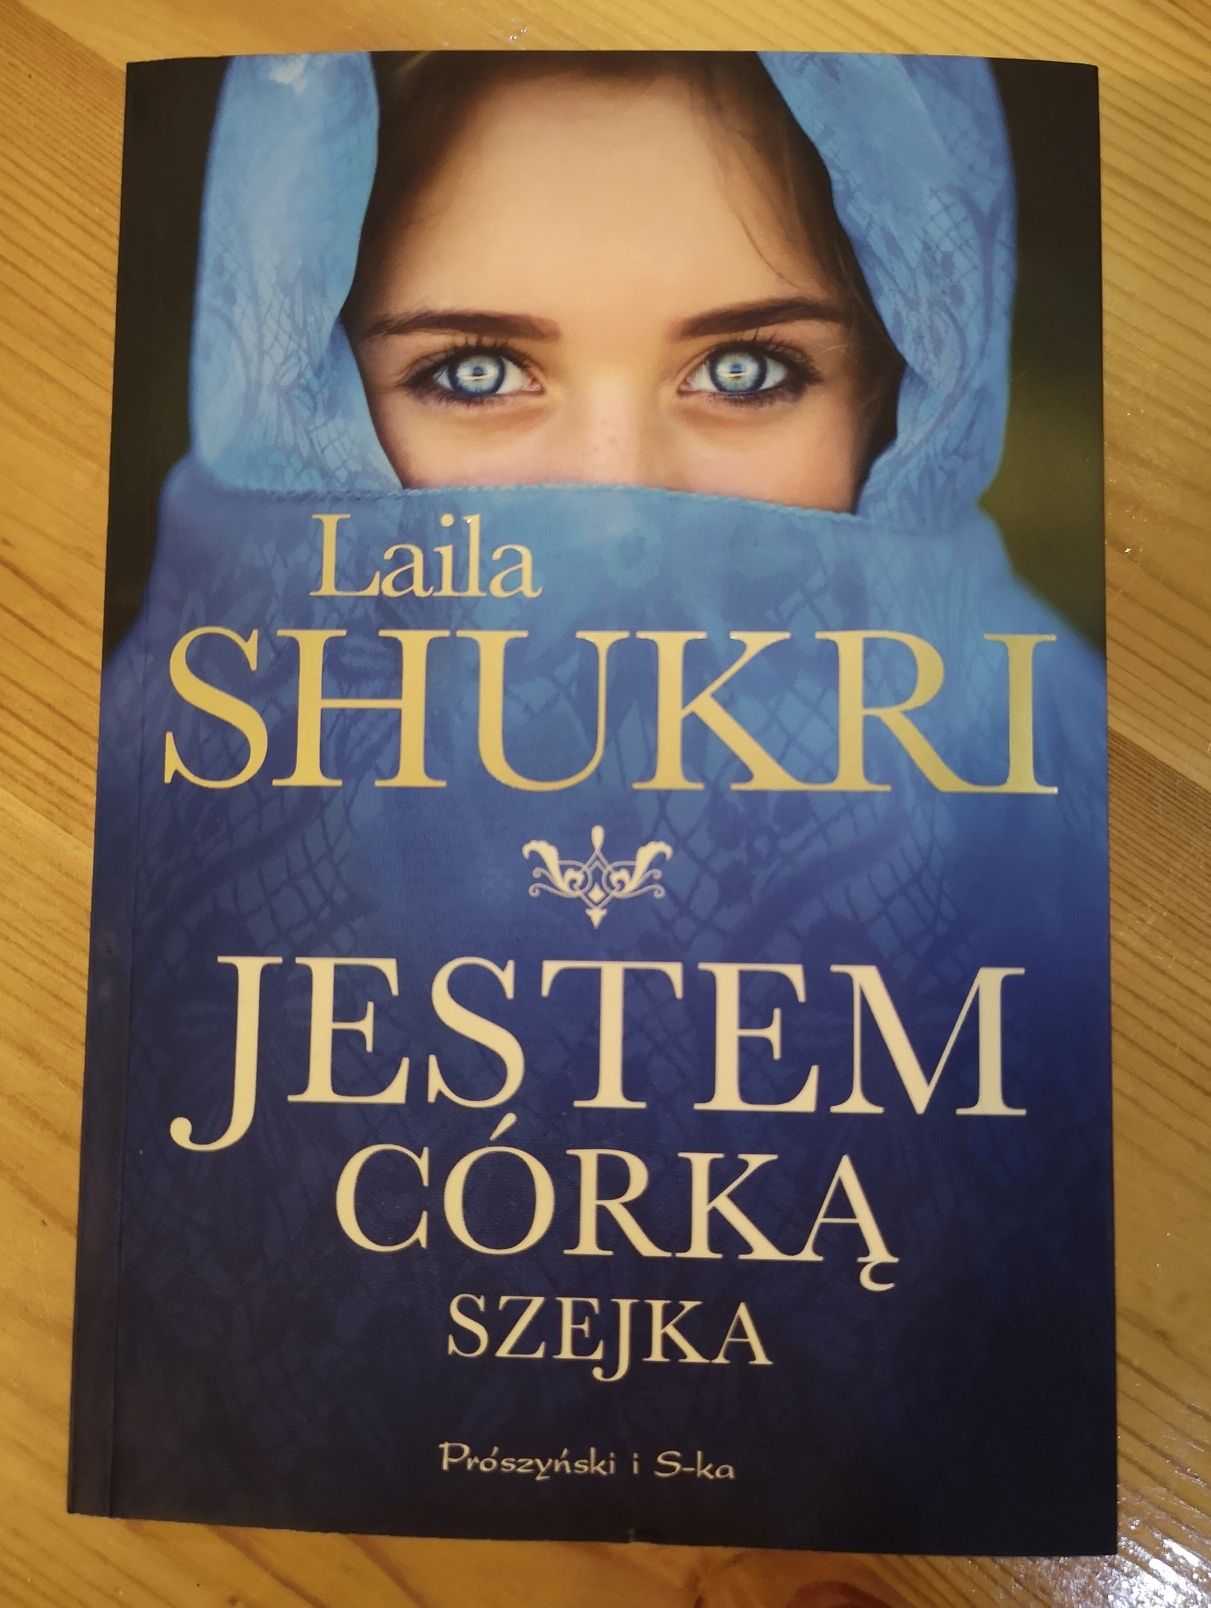 Książka "Jestem córką szejka" Laila Shukri